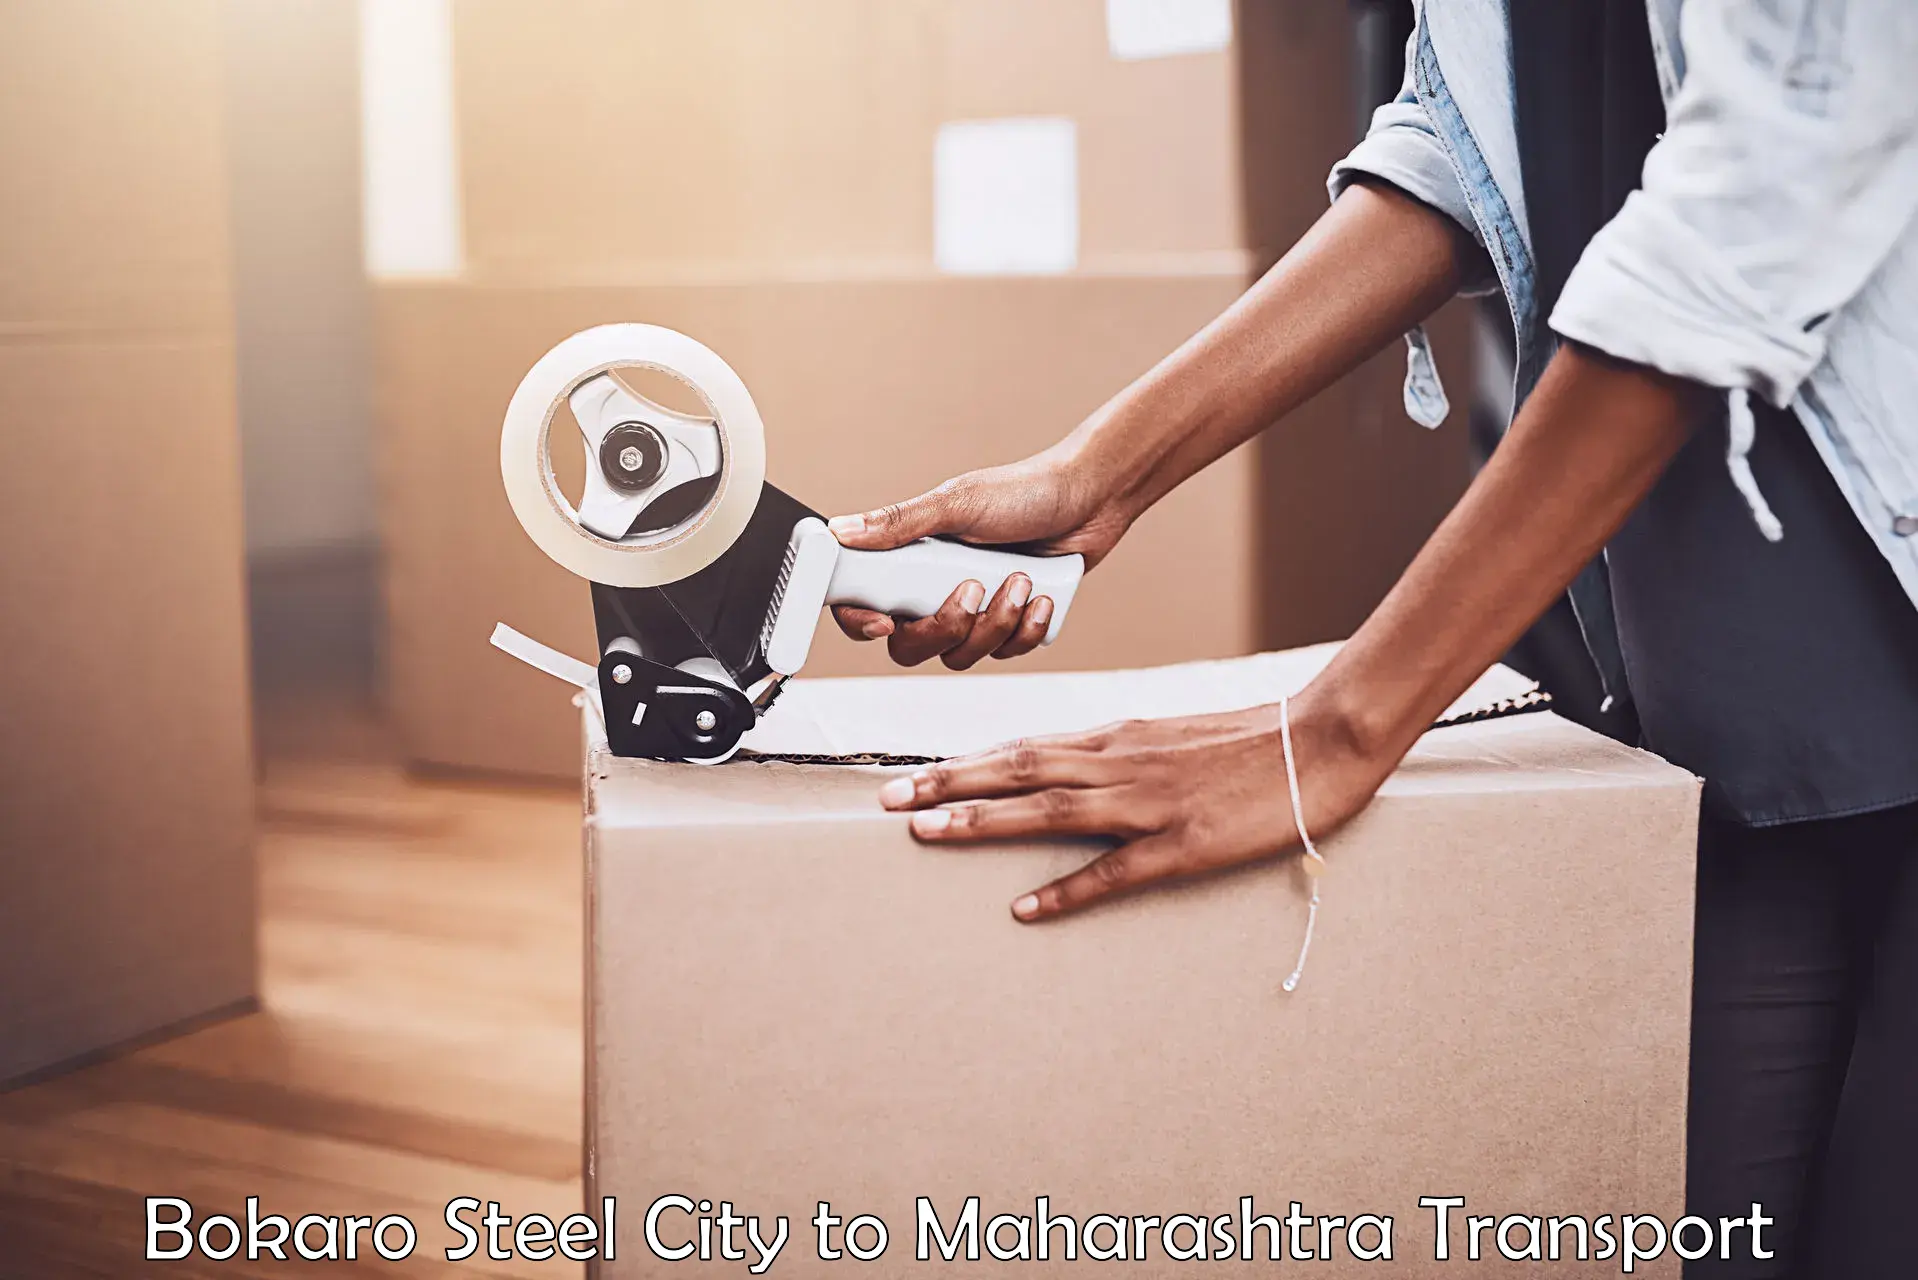 Delivery service Bokaro Steel City to Maharashtra